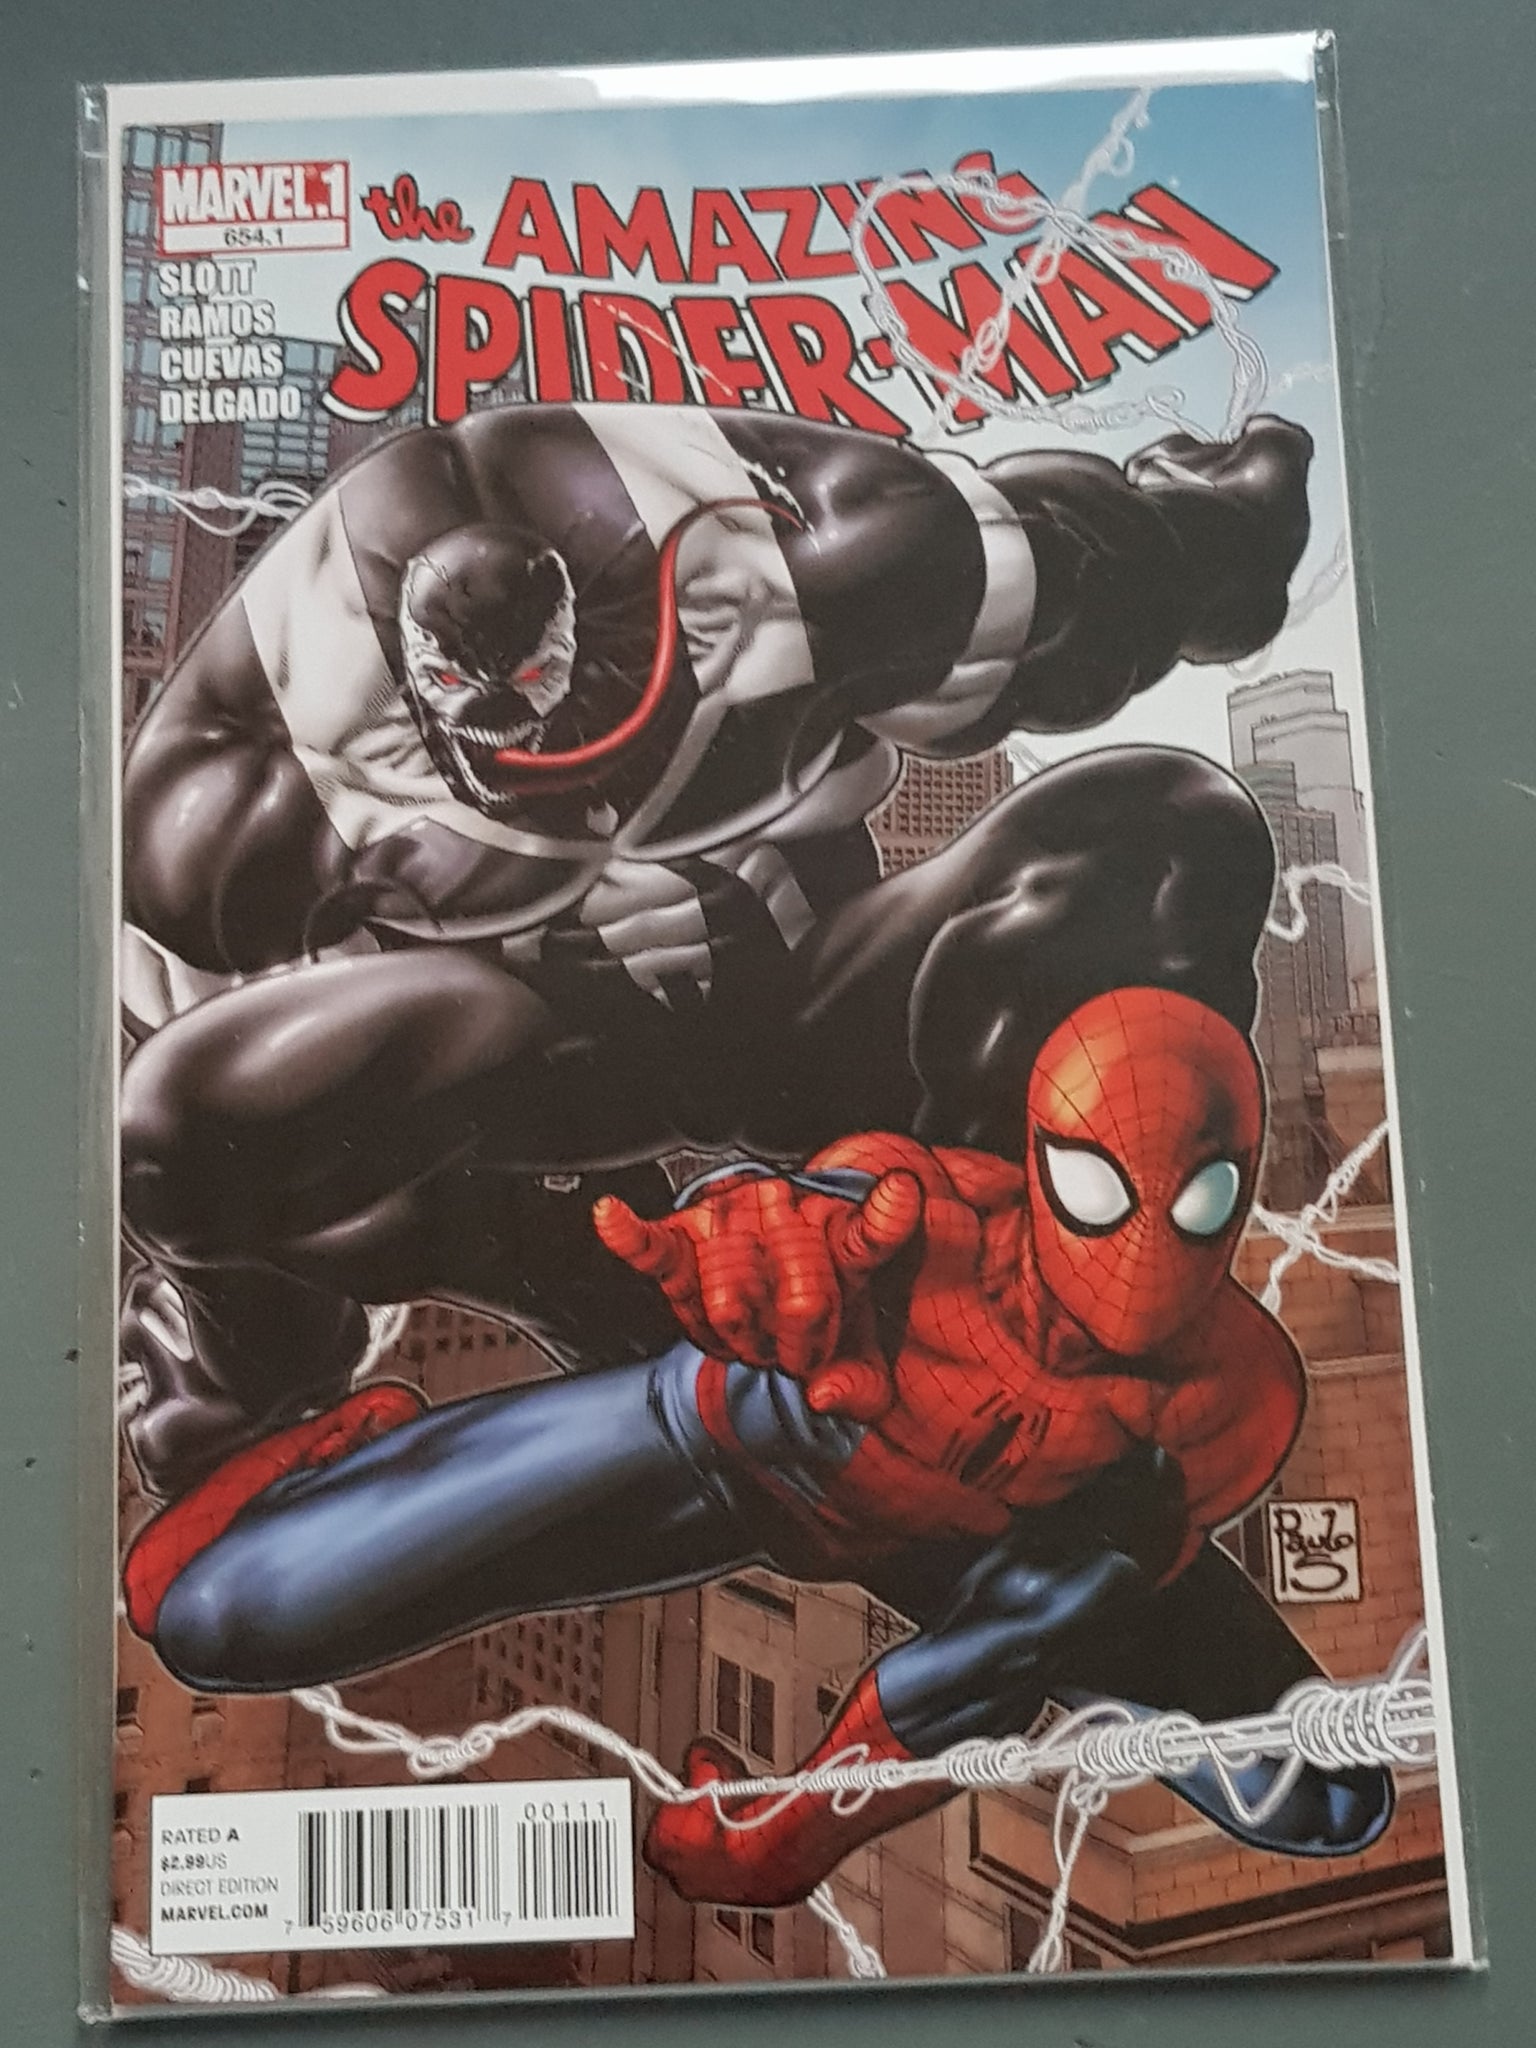 Amazing Spider-Man Vol.2 #654.1 NM